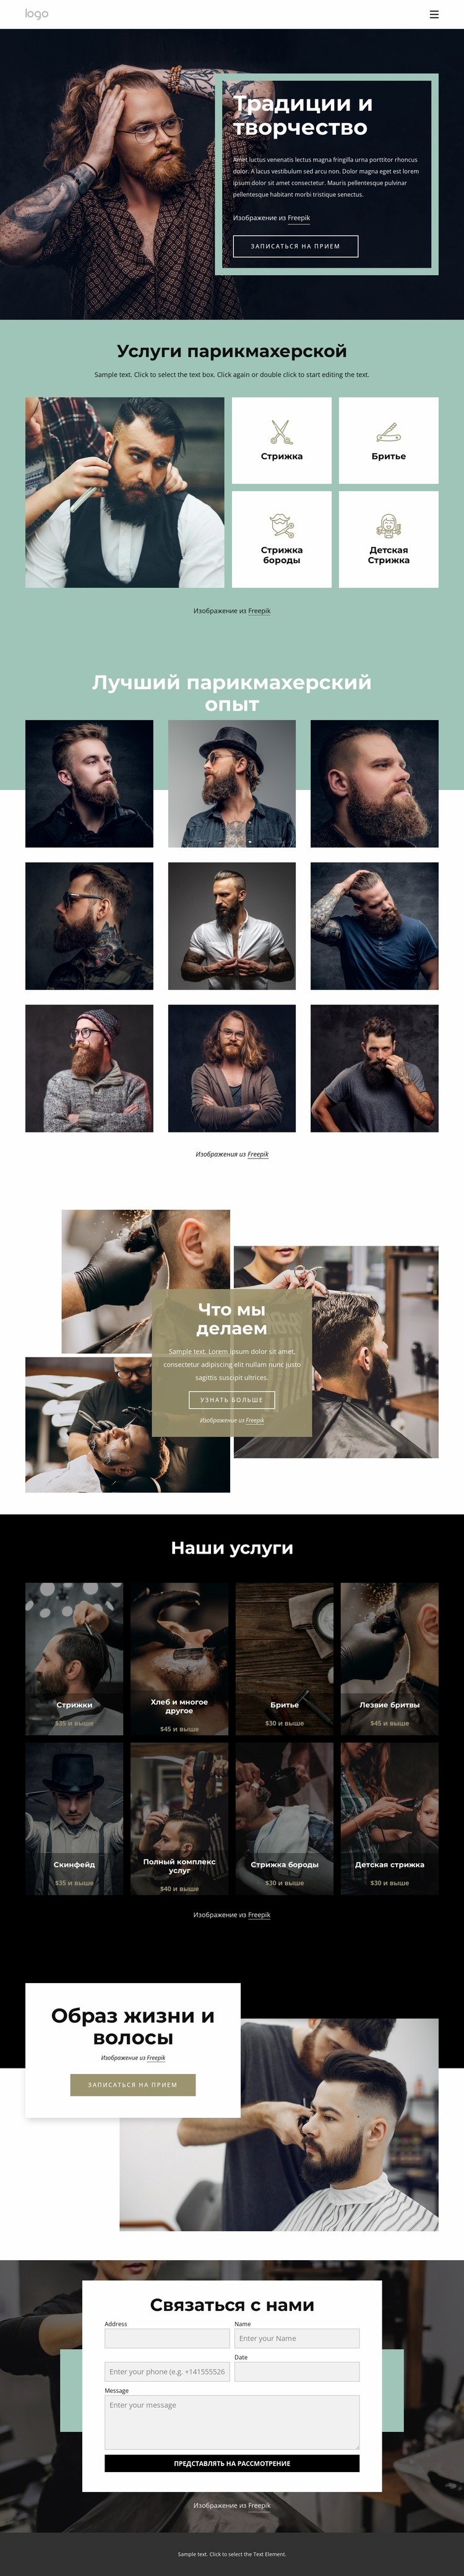 Общественный парикмахерский салон Целевая страница